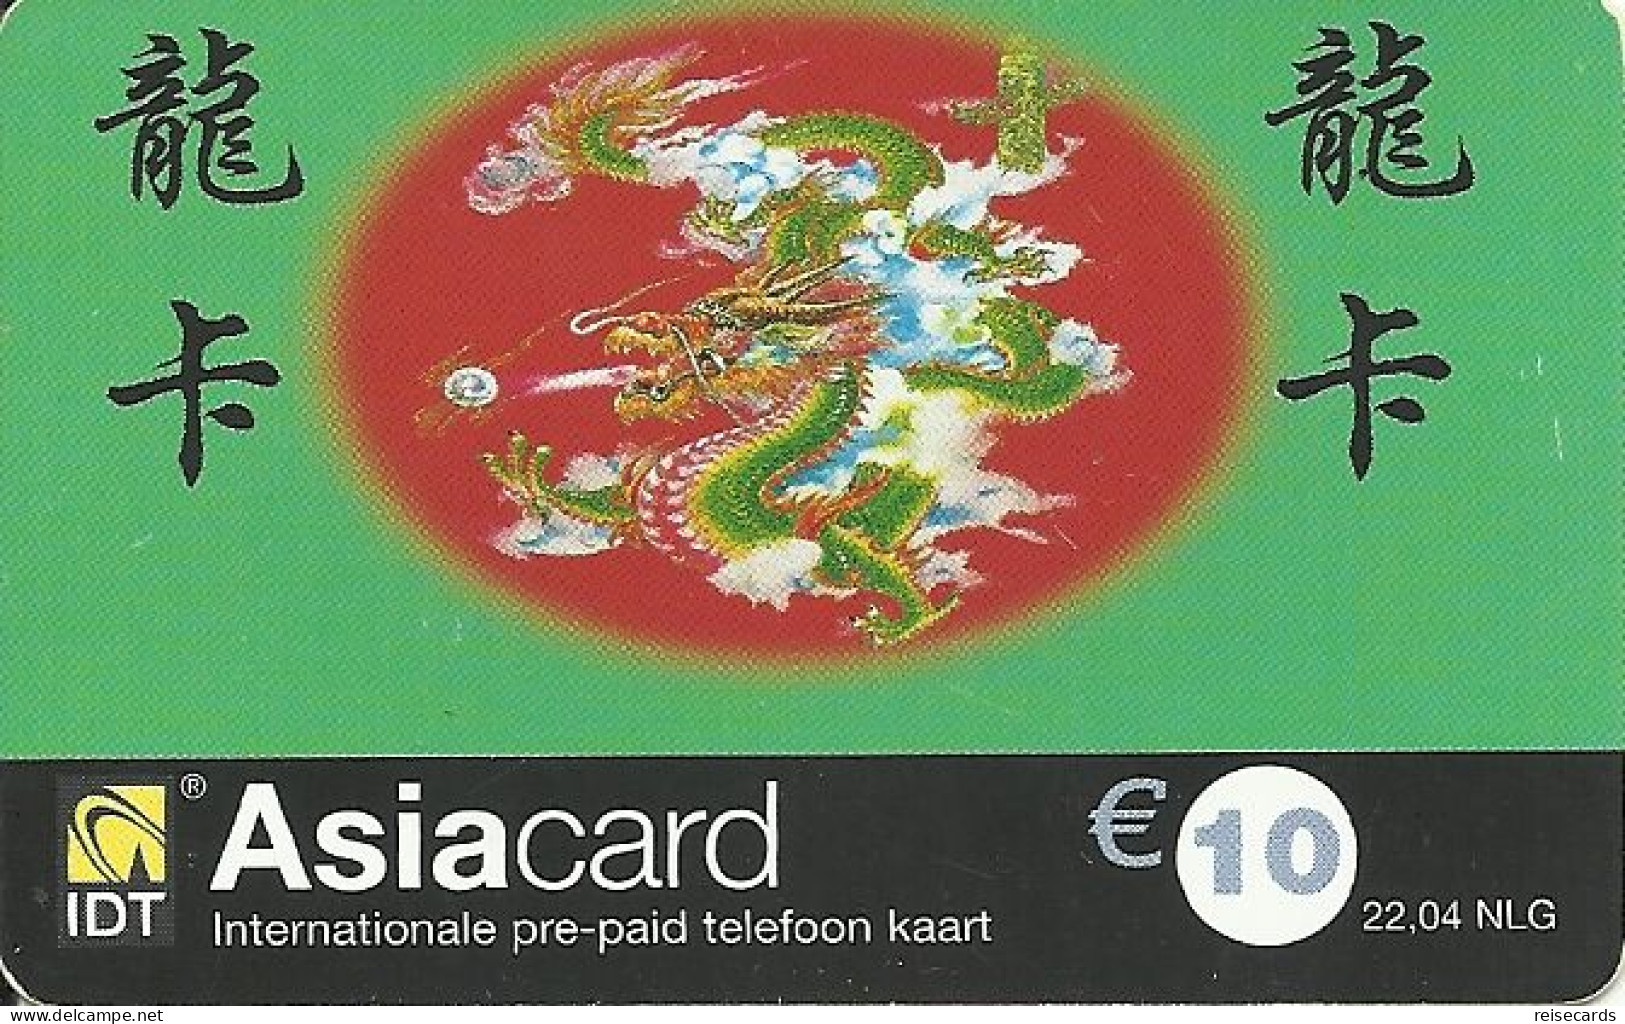 Netherlands: Prepaid IDT - Asia Card 04.04 - GSM-Kaarten, Bijvulling & Vooraf Betaalde